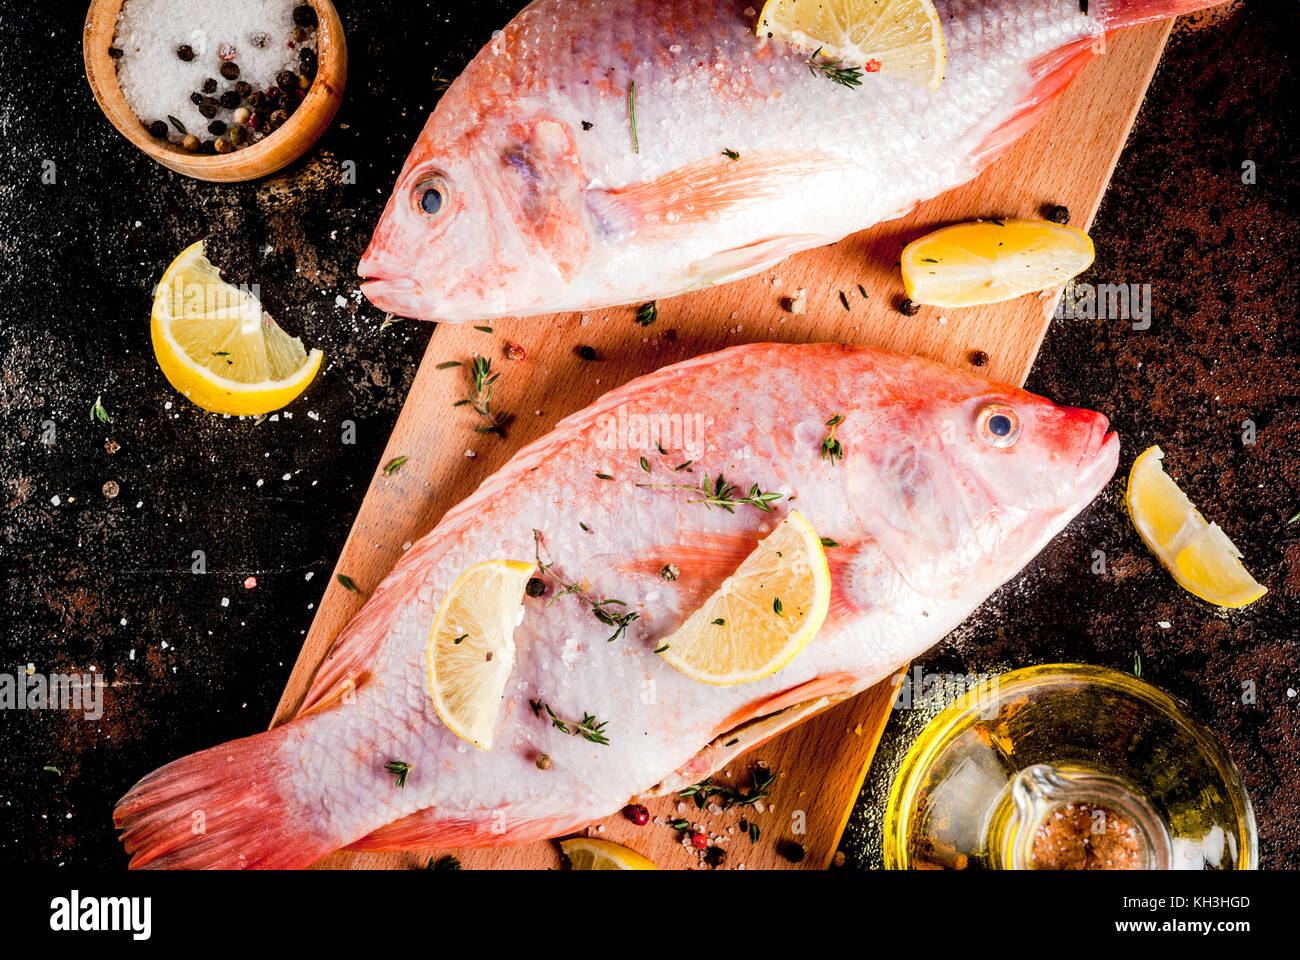 Frischen, rohen Fisch rosa Tilapia mit Gewürzen zum Kochen - Zitrone, Salz, Pfeffer, Kräuter, auf Schwarz rostiges Metall Tabelle, kopieren Raum, Ansicht von oben Stockfoto